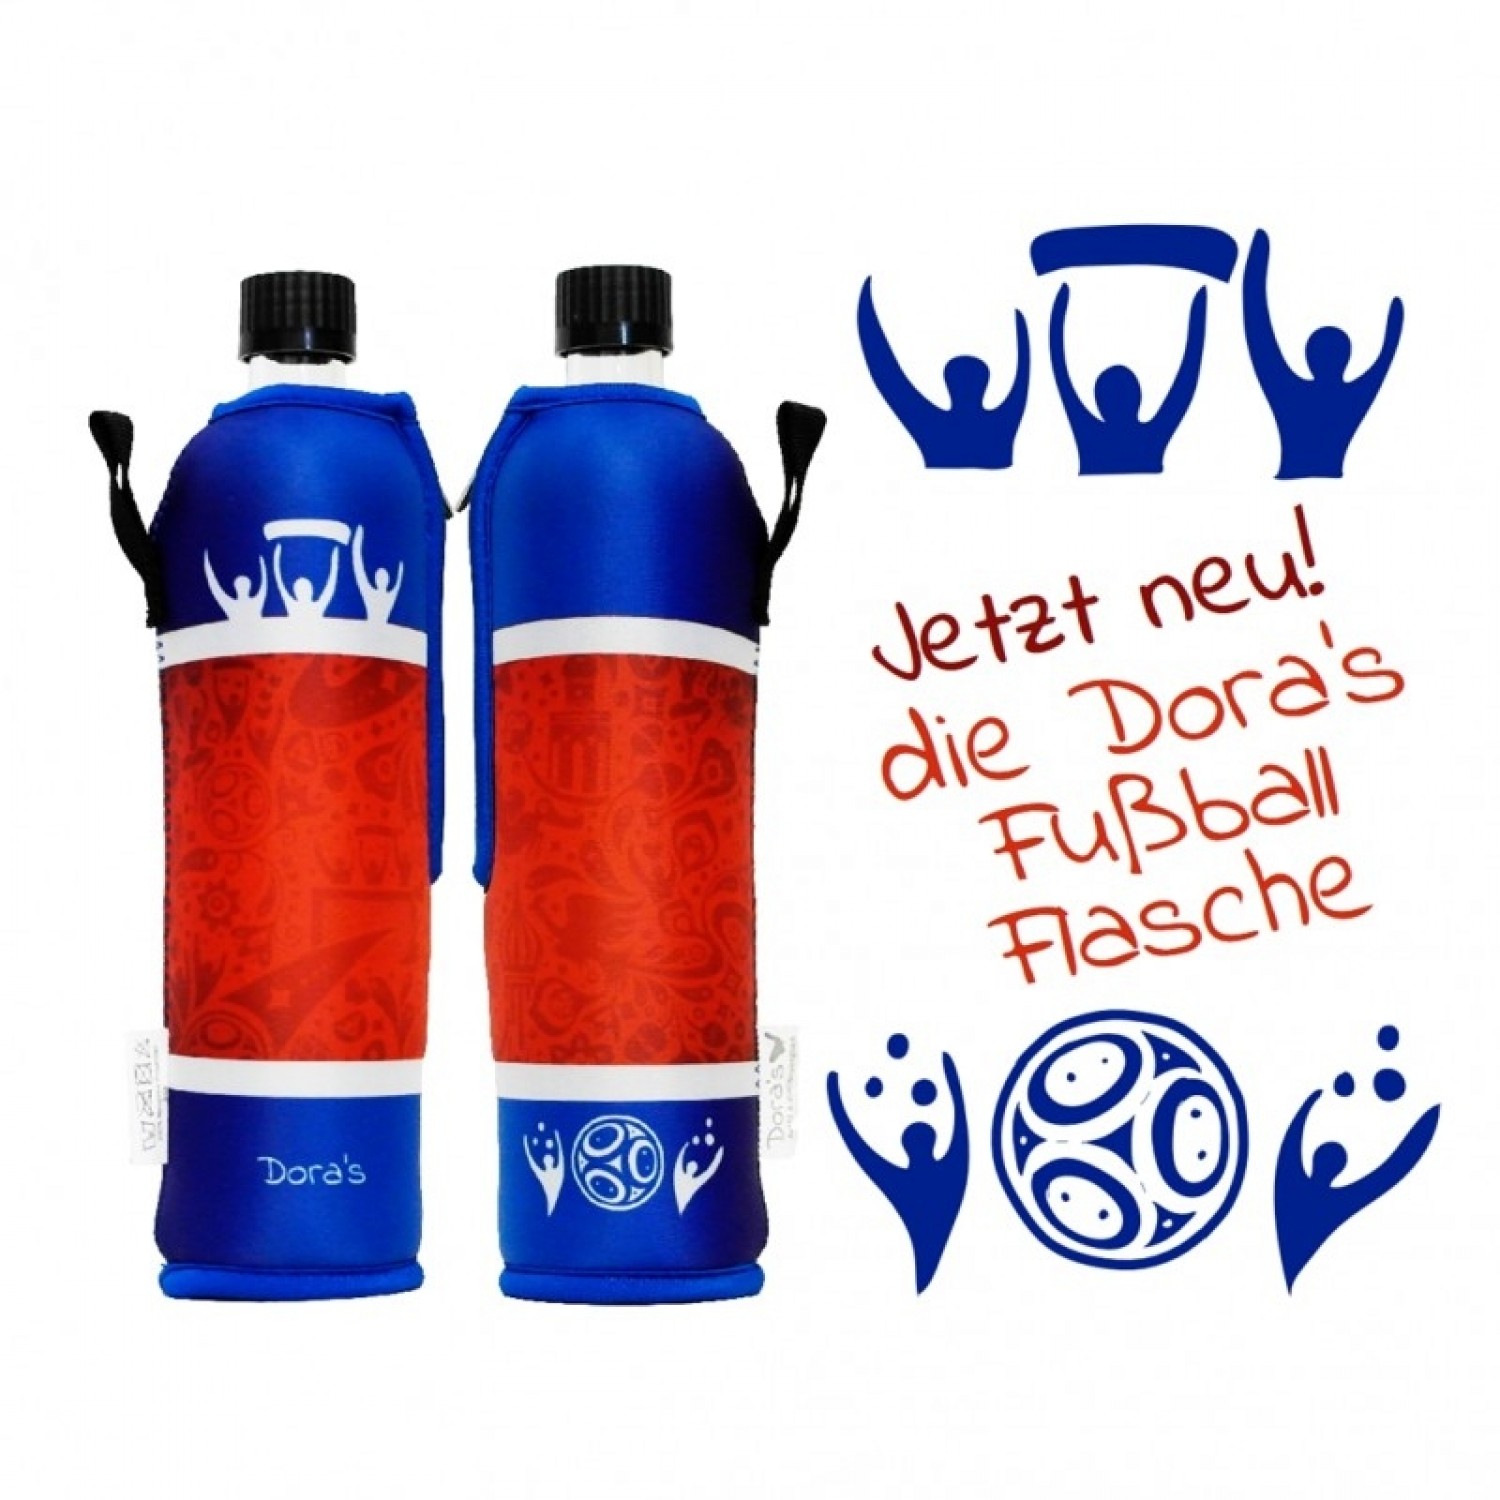 occer Bottle - Dora‘s Glass bottle & Motif Neoprene Sleeve